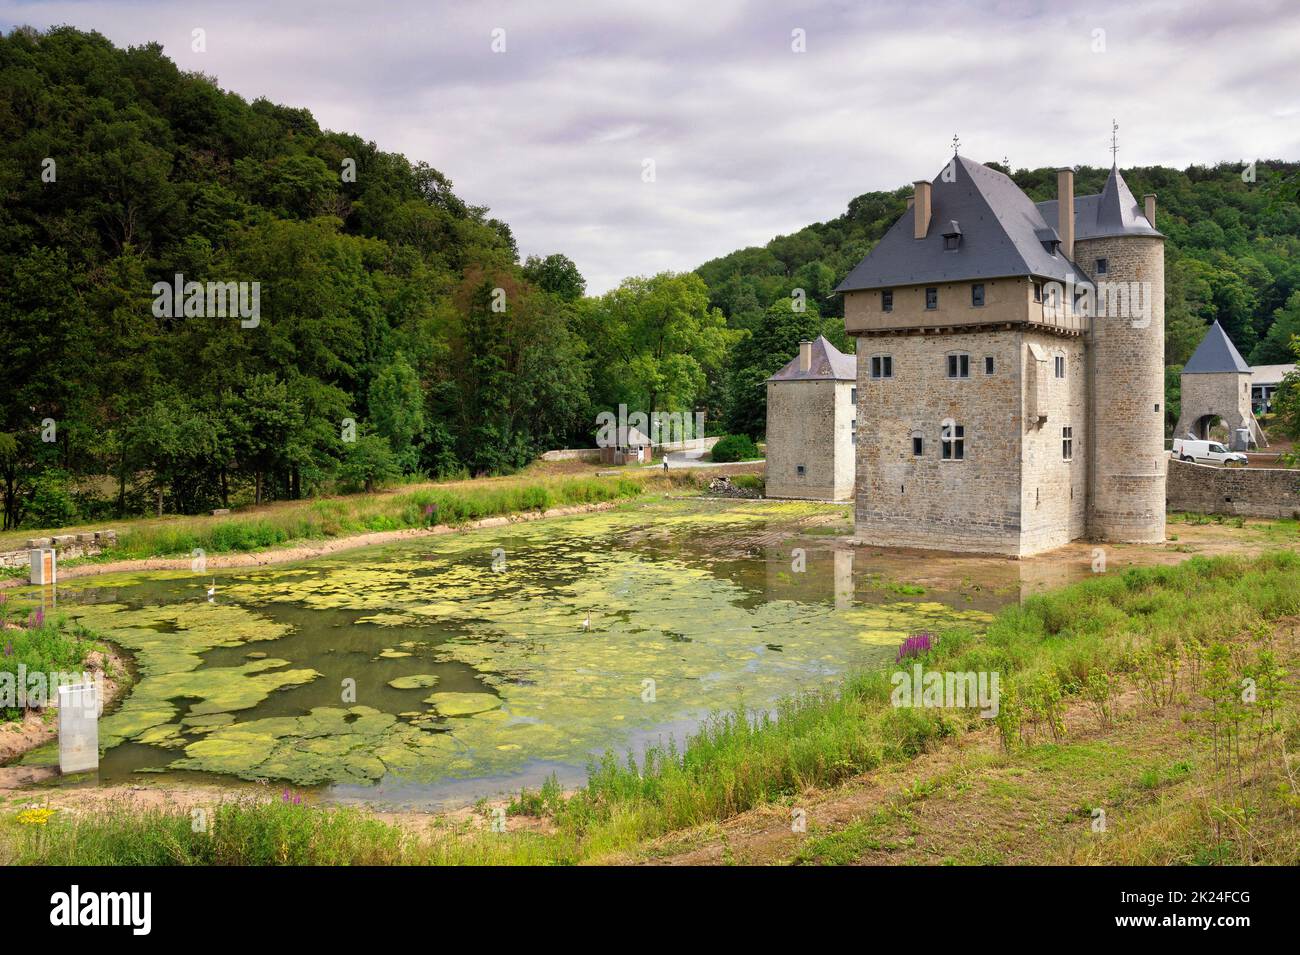 Vue sur le château médiéval du village belge Crupet dans la province de Namur Banque D'Images